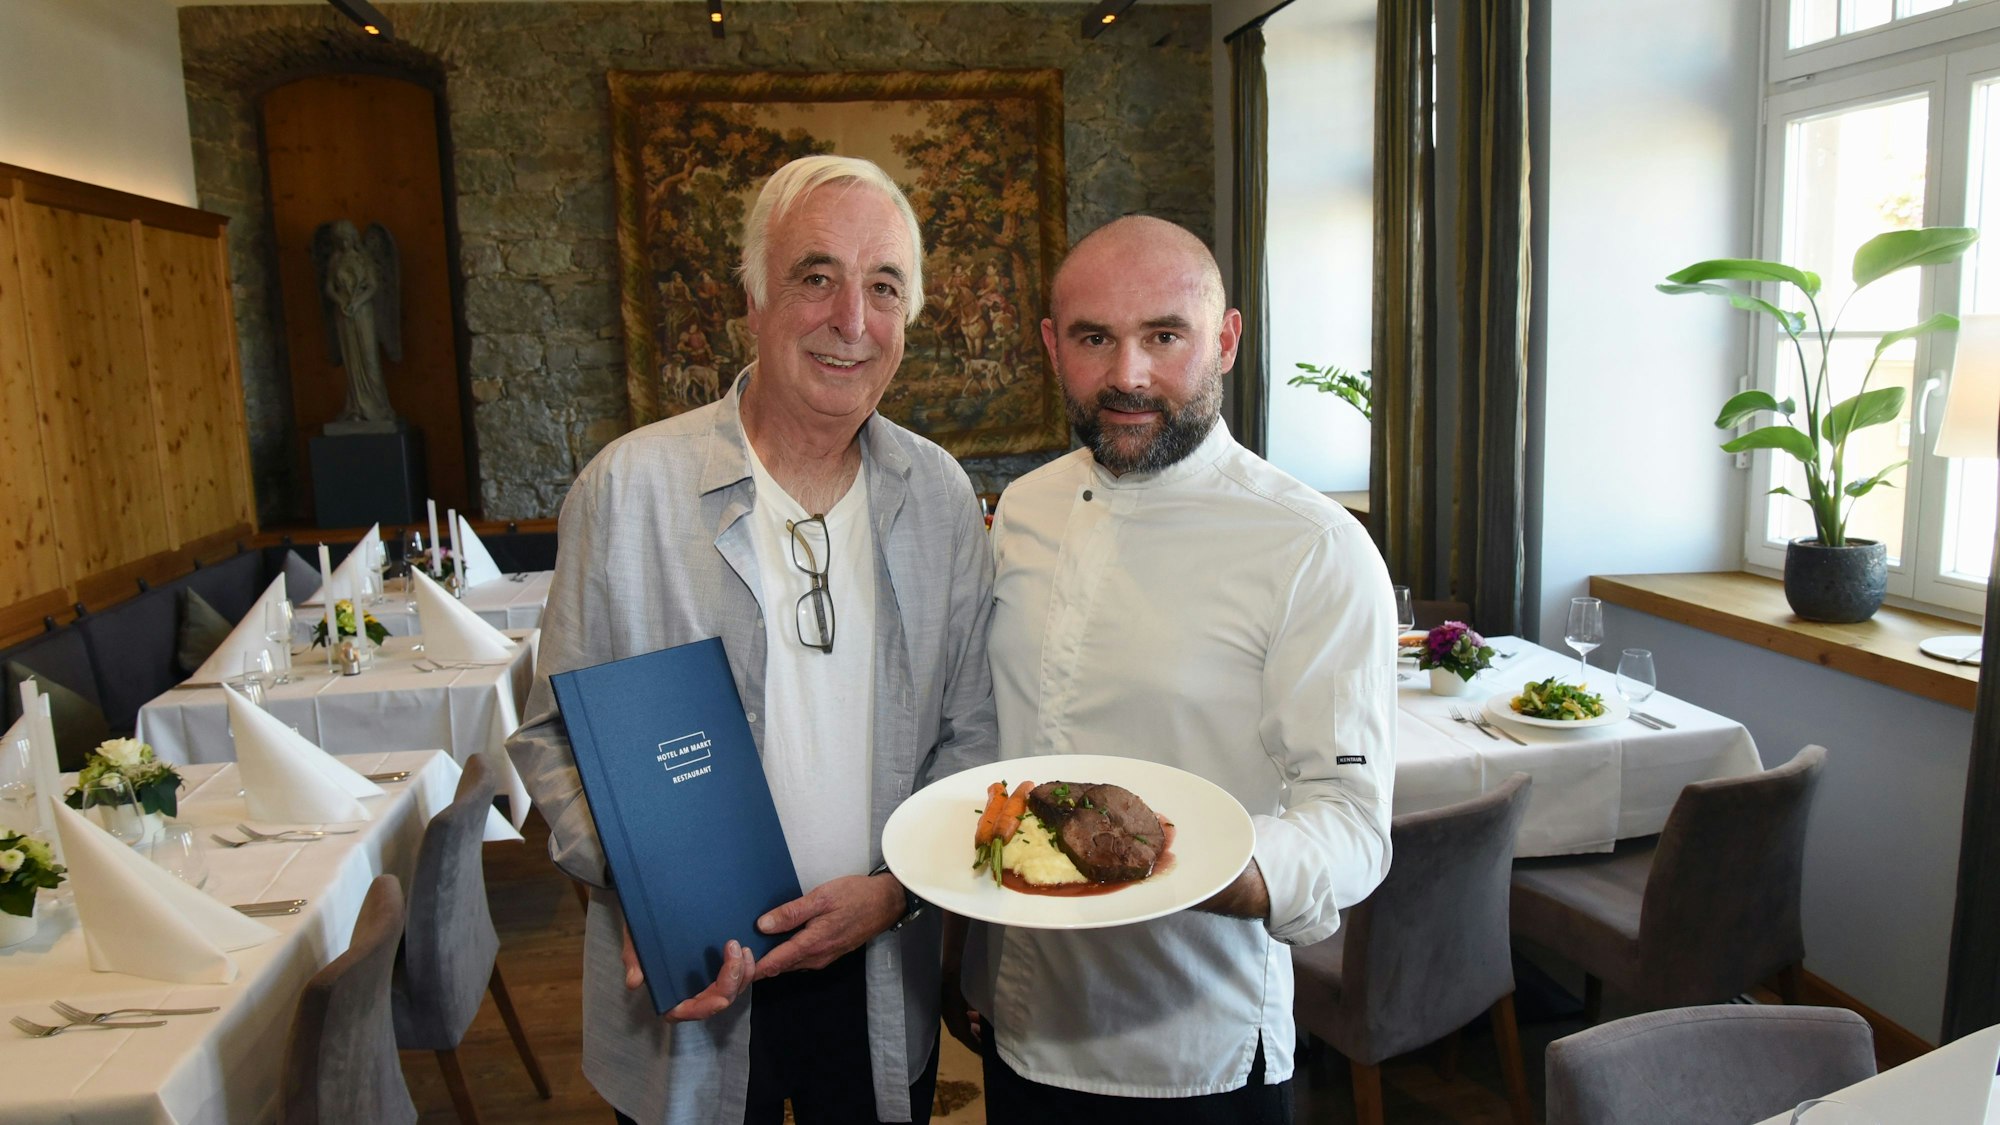 Klaus Ortlieb und Armend Mustafi stehen im Gastraum des „Hotels am Markt“ in Wipperfürth und zeigen ein Gericht von der neuen Speisekarte.